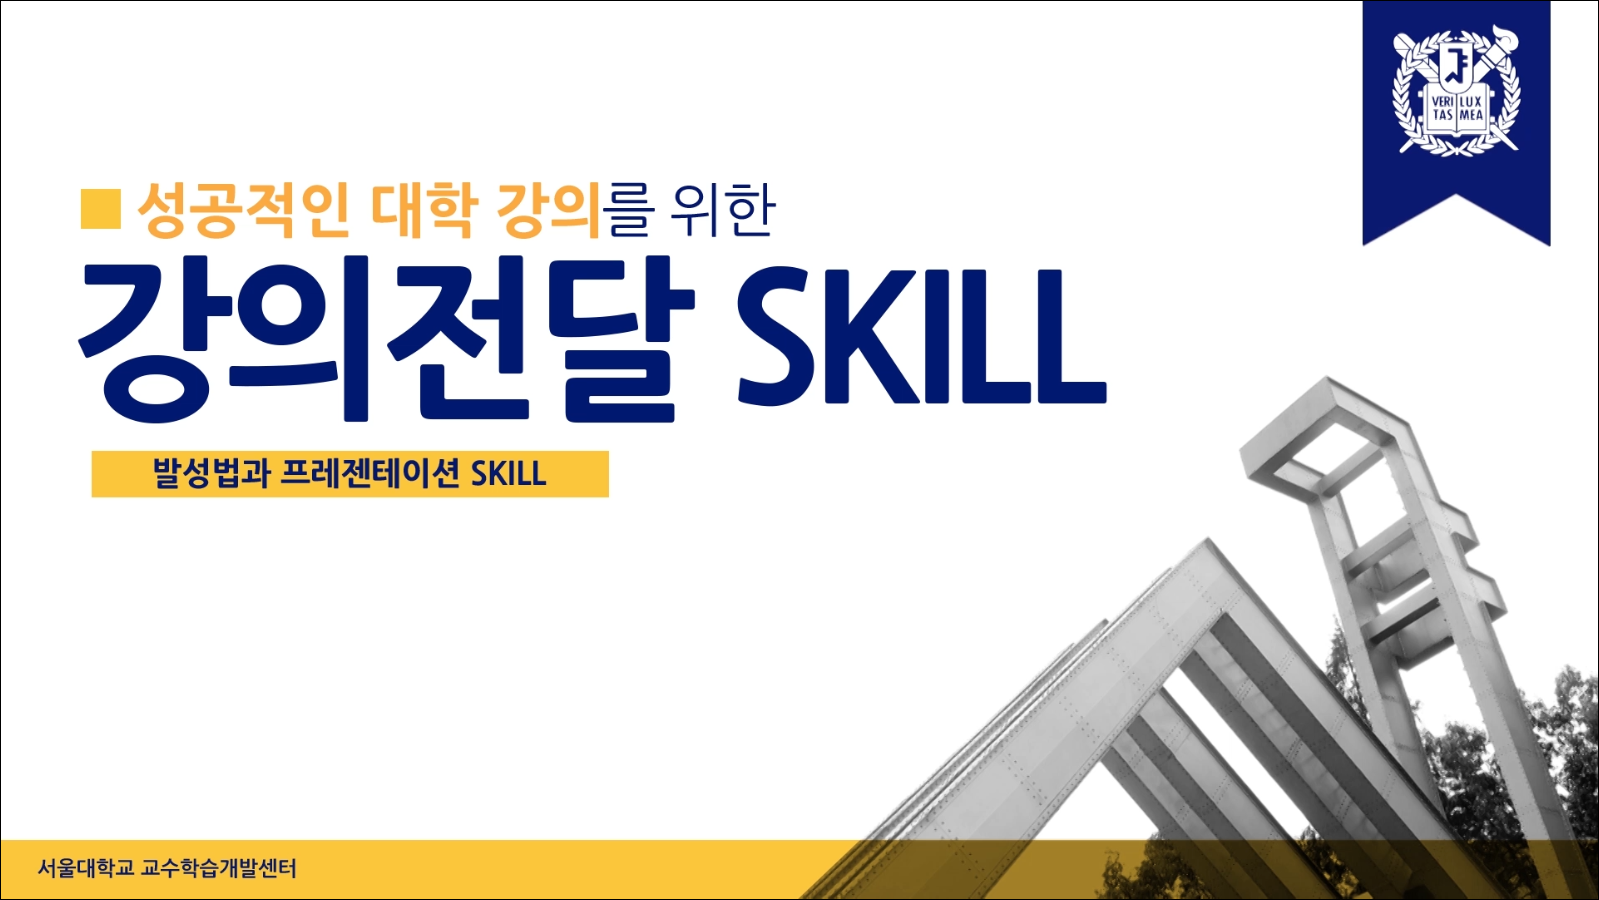 2. 성공적인 대학 강의를 위한 강의전달 SKILL(발성법과 프레젠테이션 SKILL) (5) 정리 대표이미지